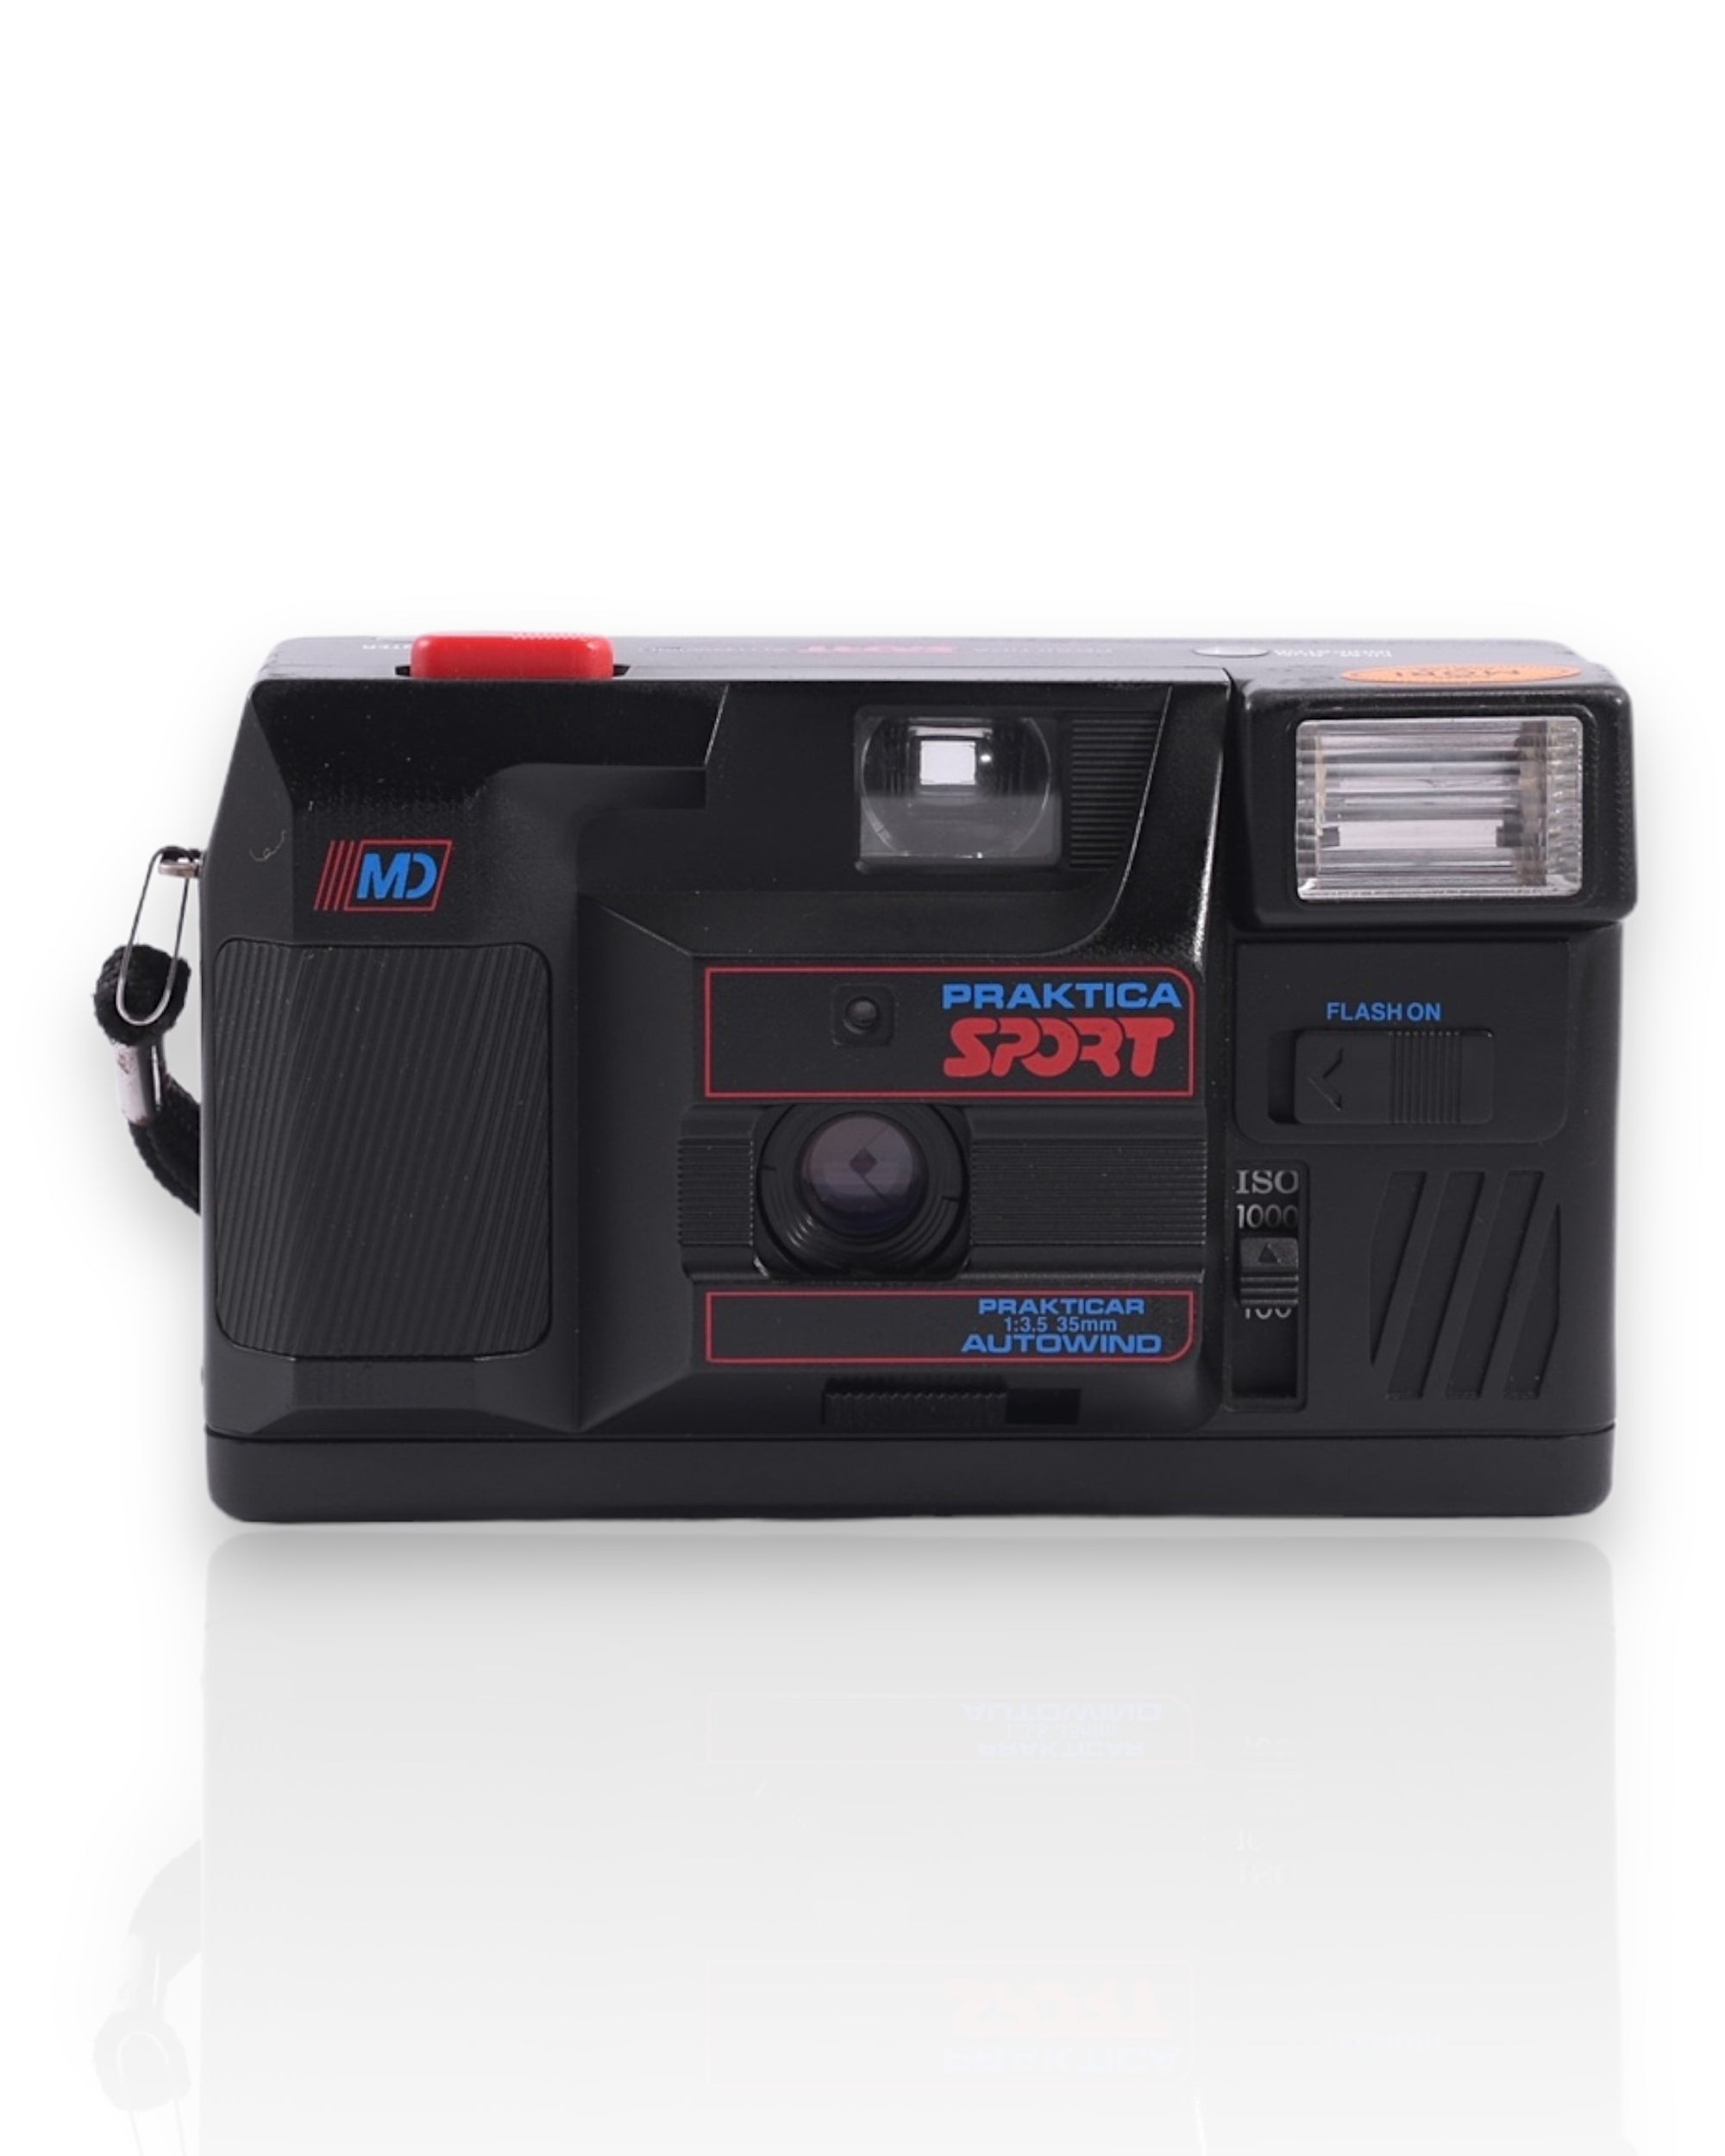 Praktica Sport Autofocus 35mm Point & Shoot Film Camera with 35mm f3.6 Lena